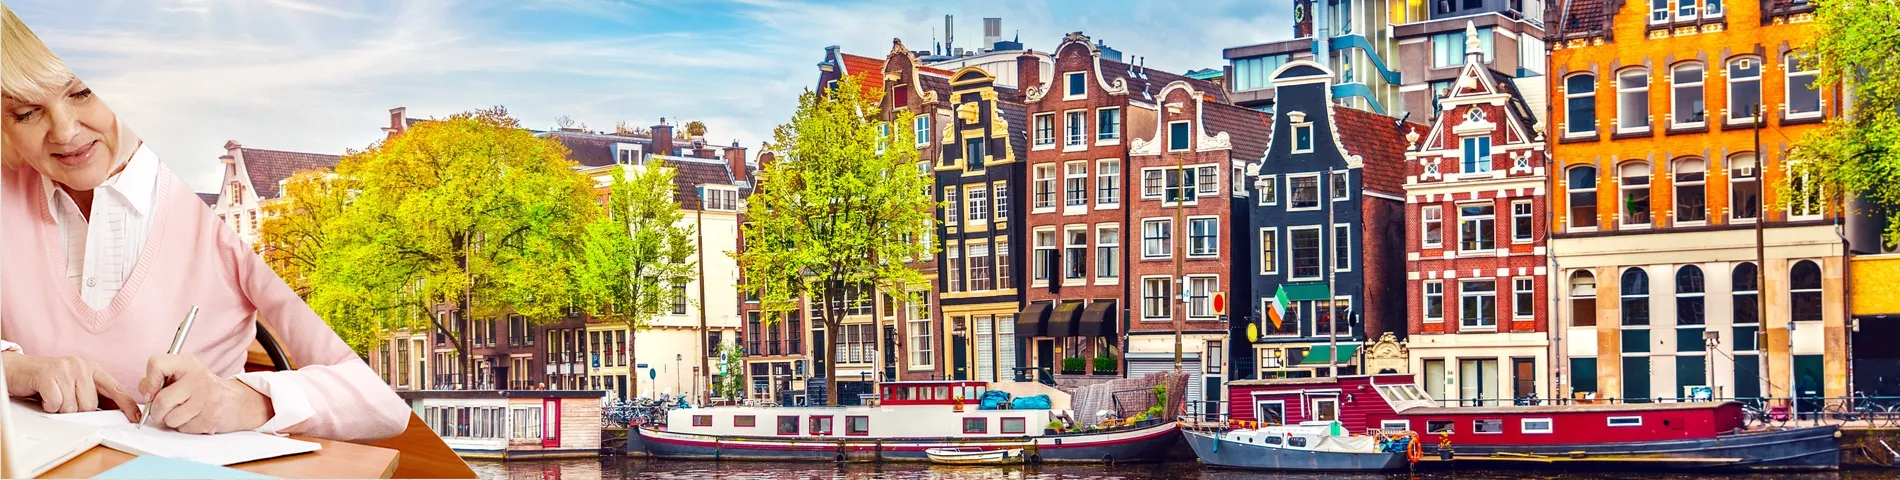 アムステルダム - 